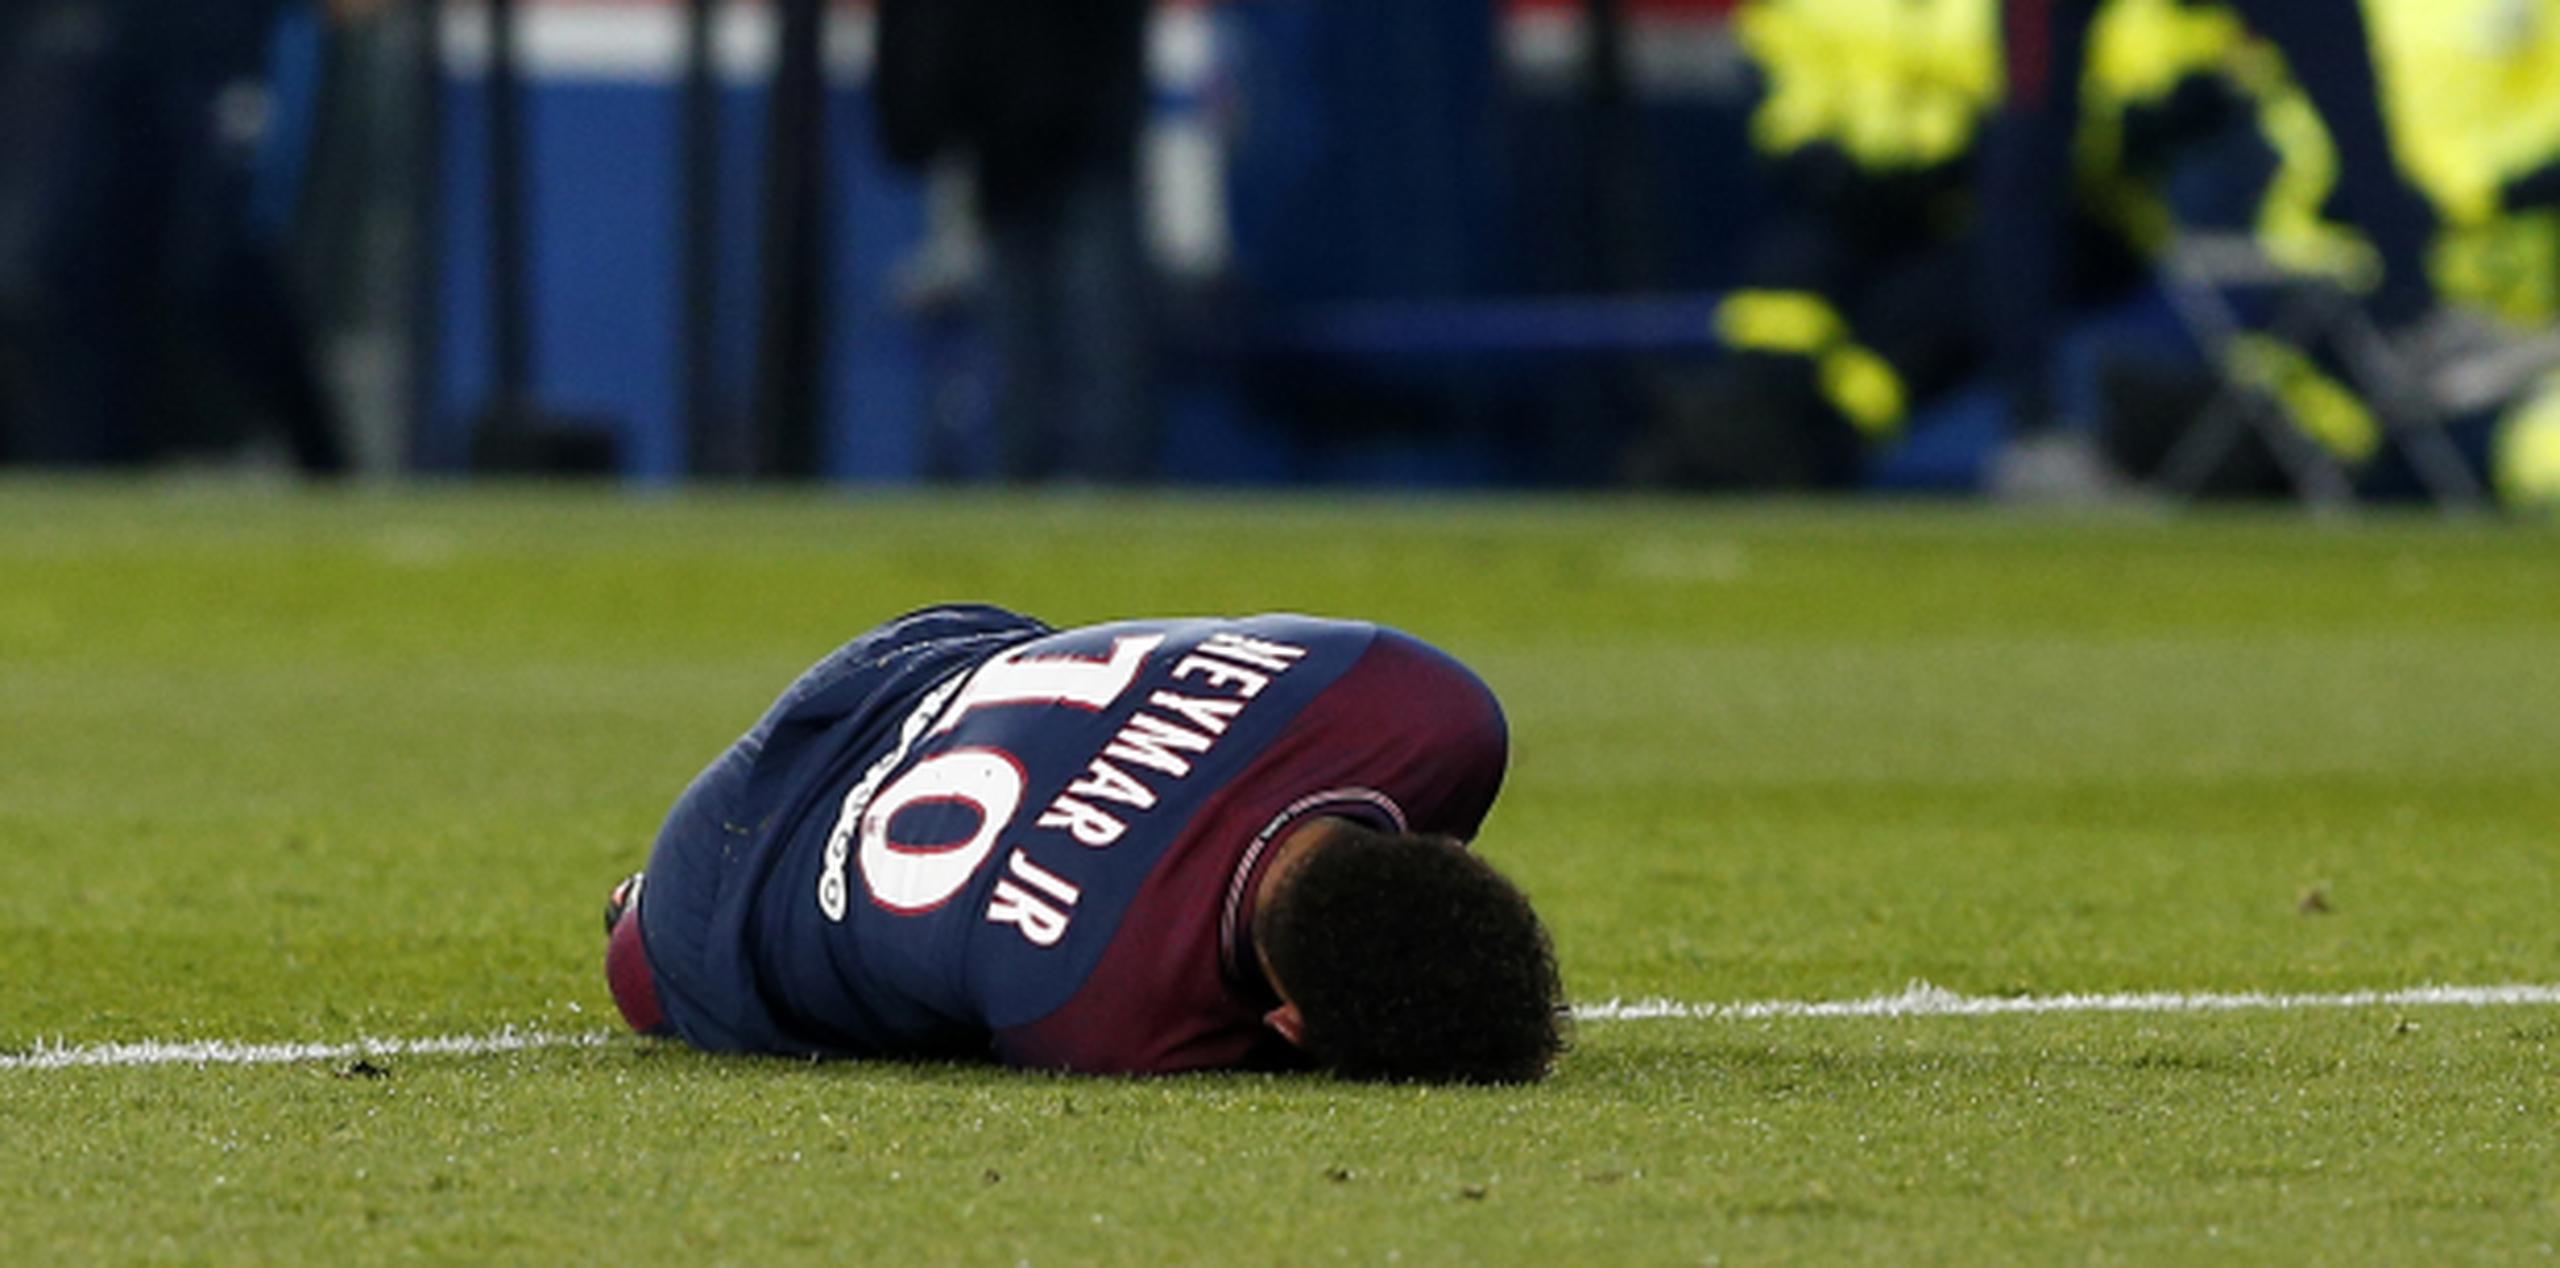 El delantero brasileño Neymar se retuerce del dolor tras lesionarse en el partido contra Marsella por la liga francesa, el domingo. (AP)